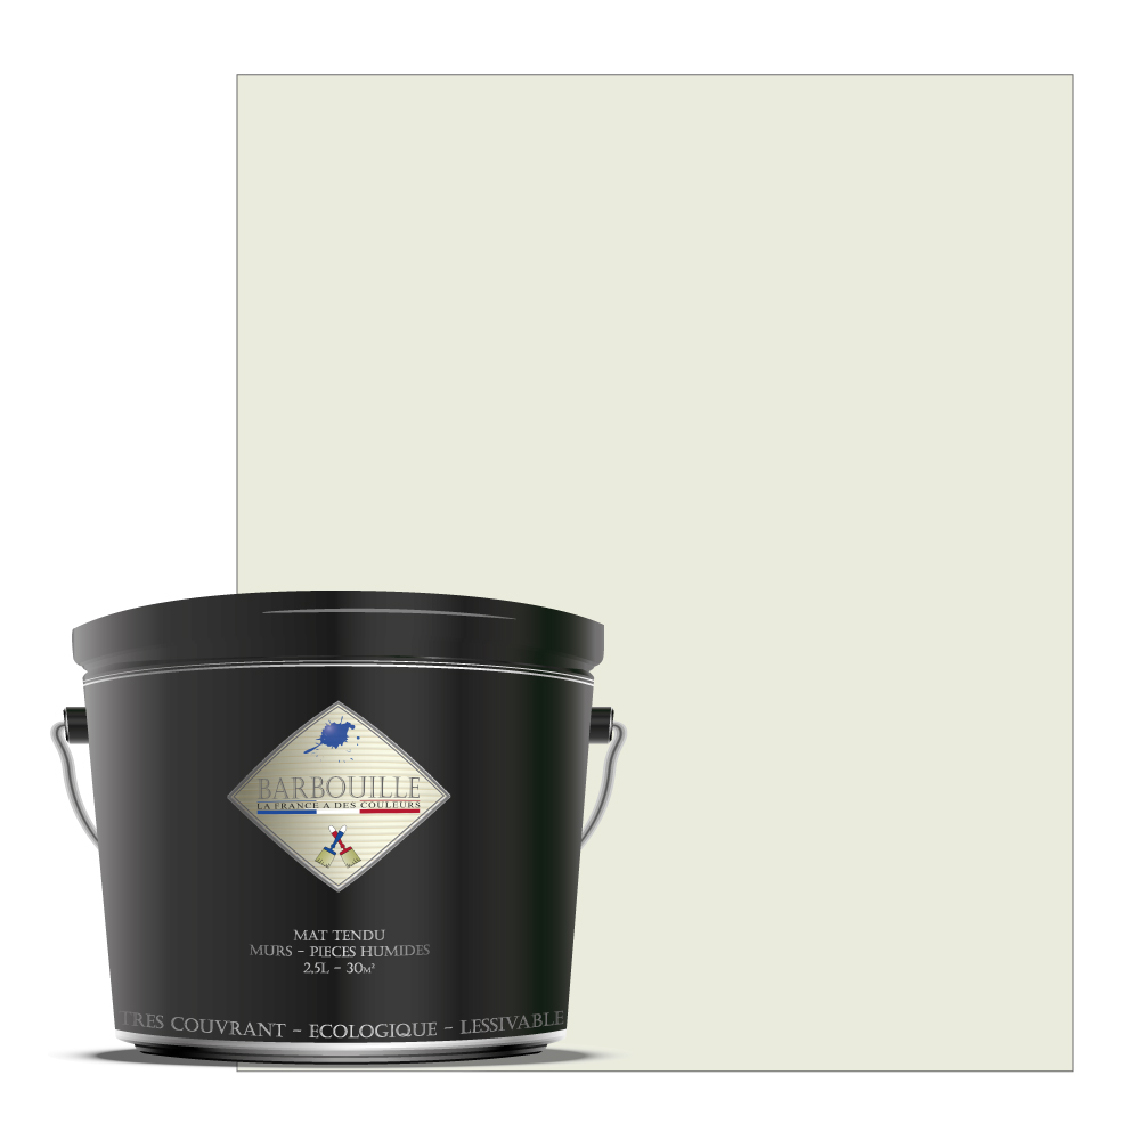 Barbouille - Peinture lessivable acrylique mat – murs et plafonds - Peinture intérieure